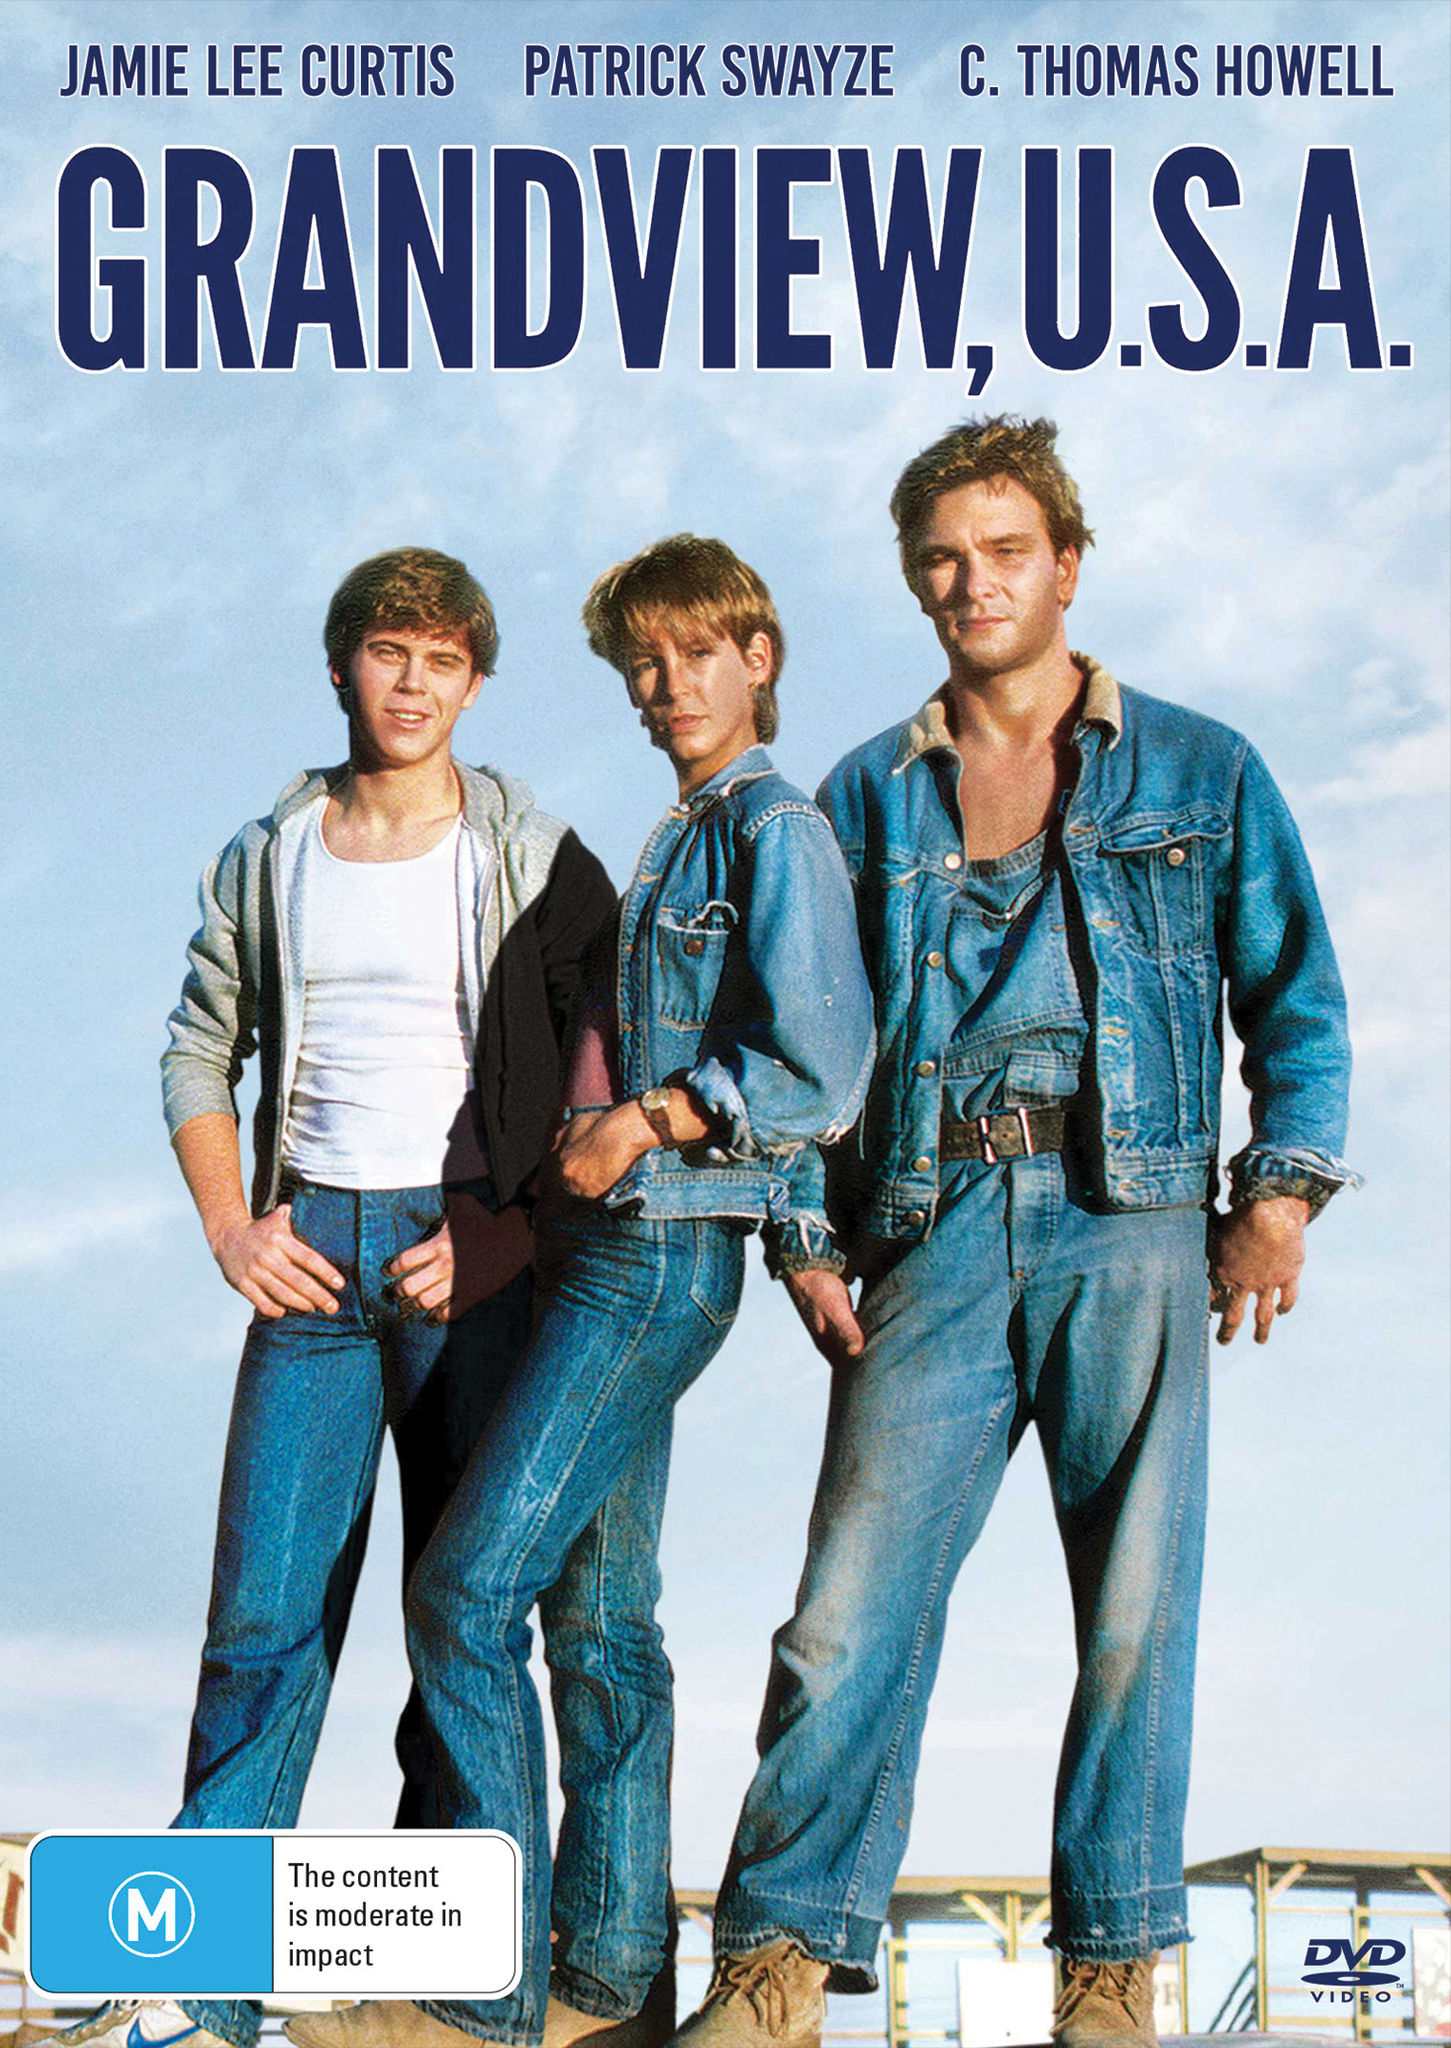 GRANDVIEW U.S.A. - DVD